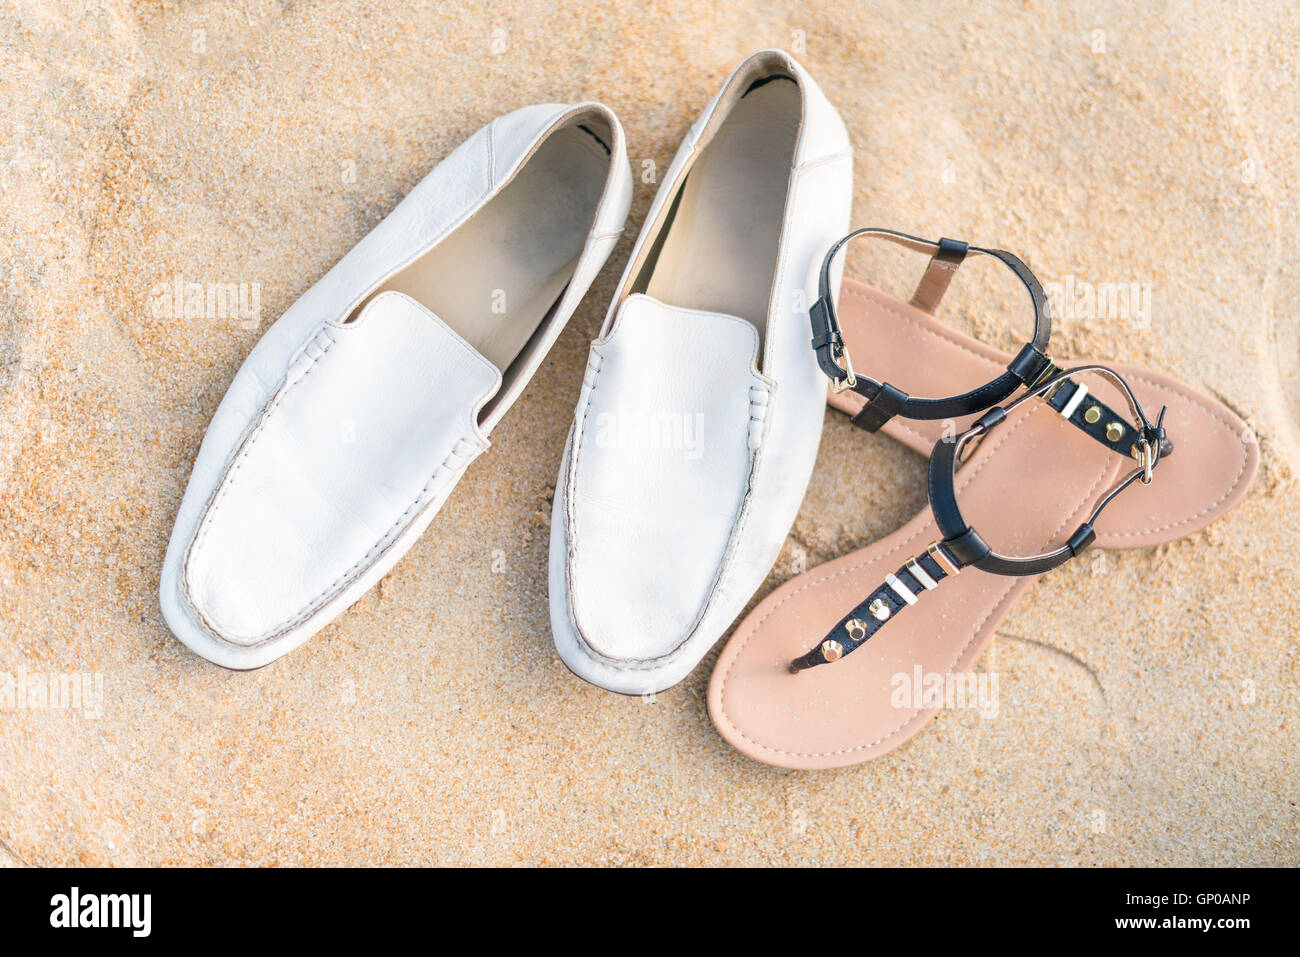 Des couples's shoes on sandy beach Banque D'Images